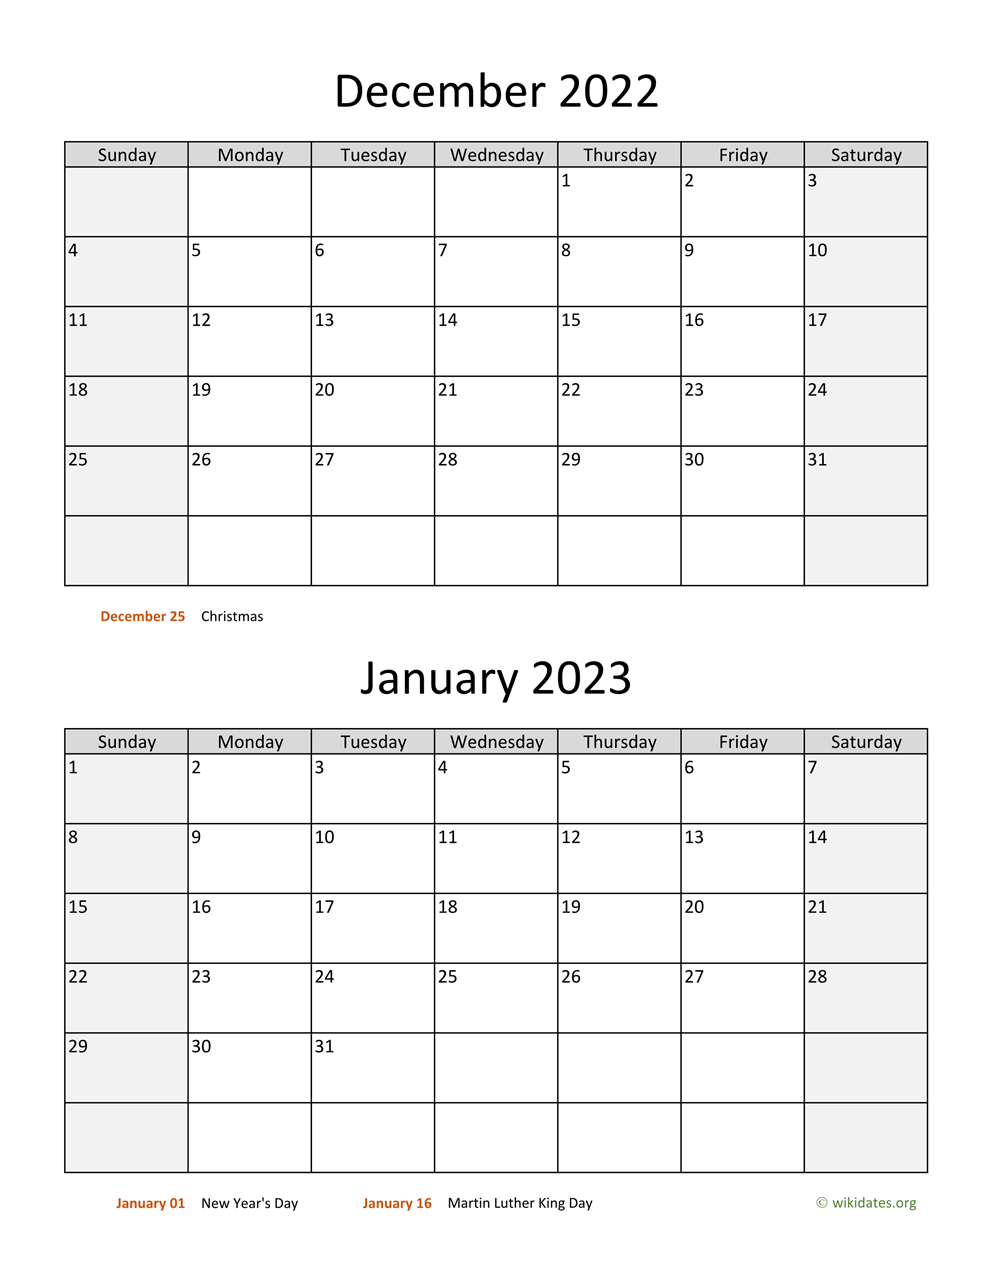 Oct Nov Dec 2022 Calendar December 2022 And January 2023 Calendar | Wikidates.org